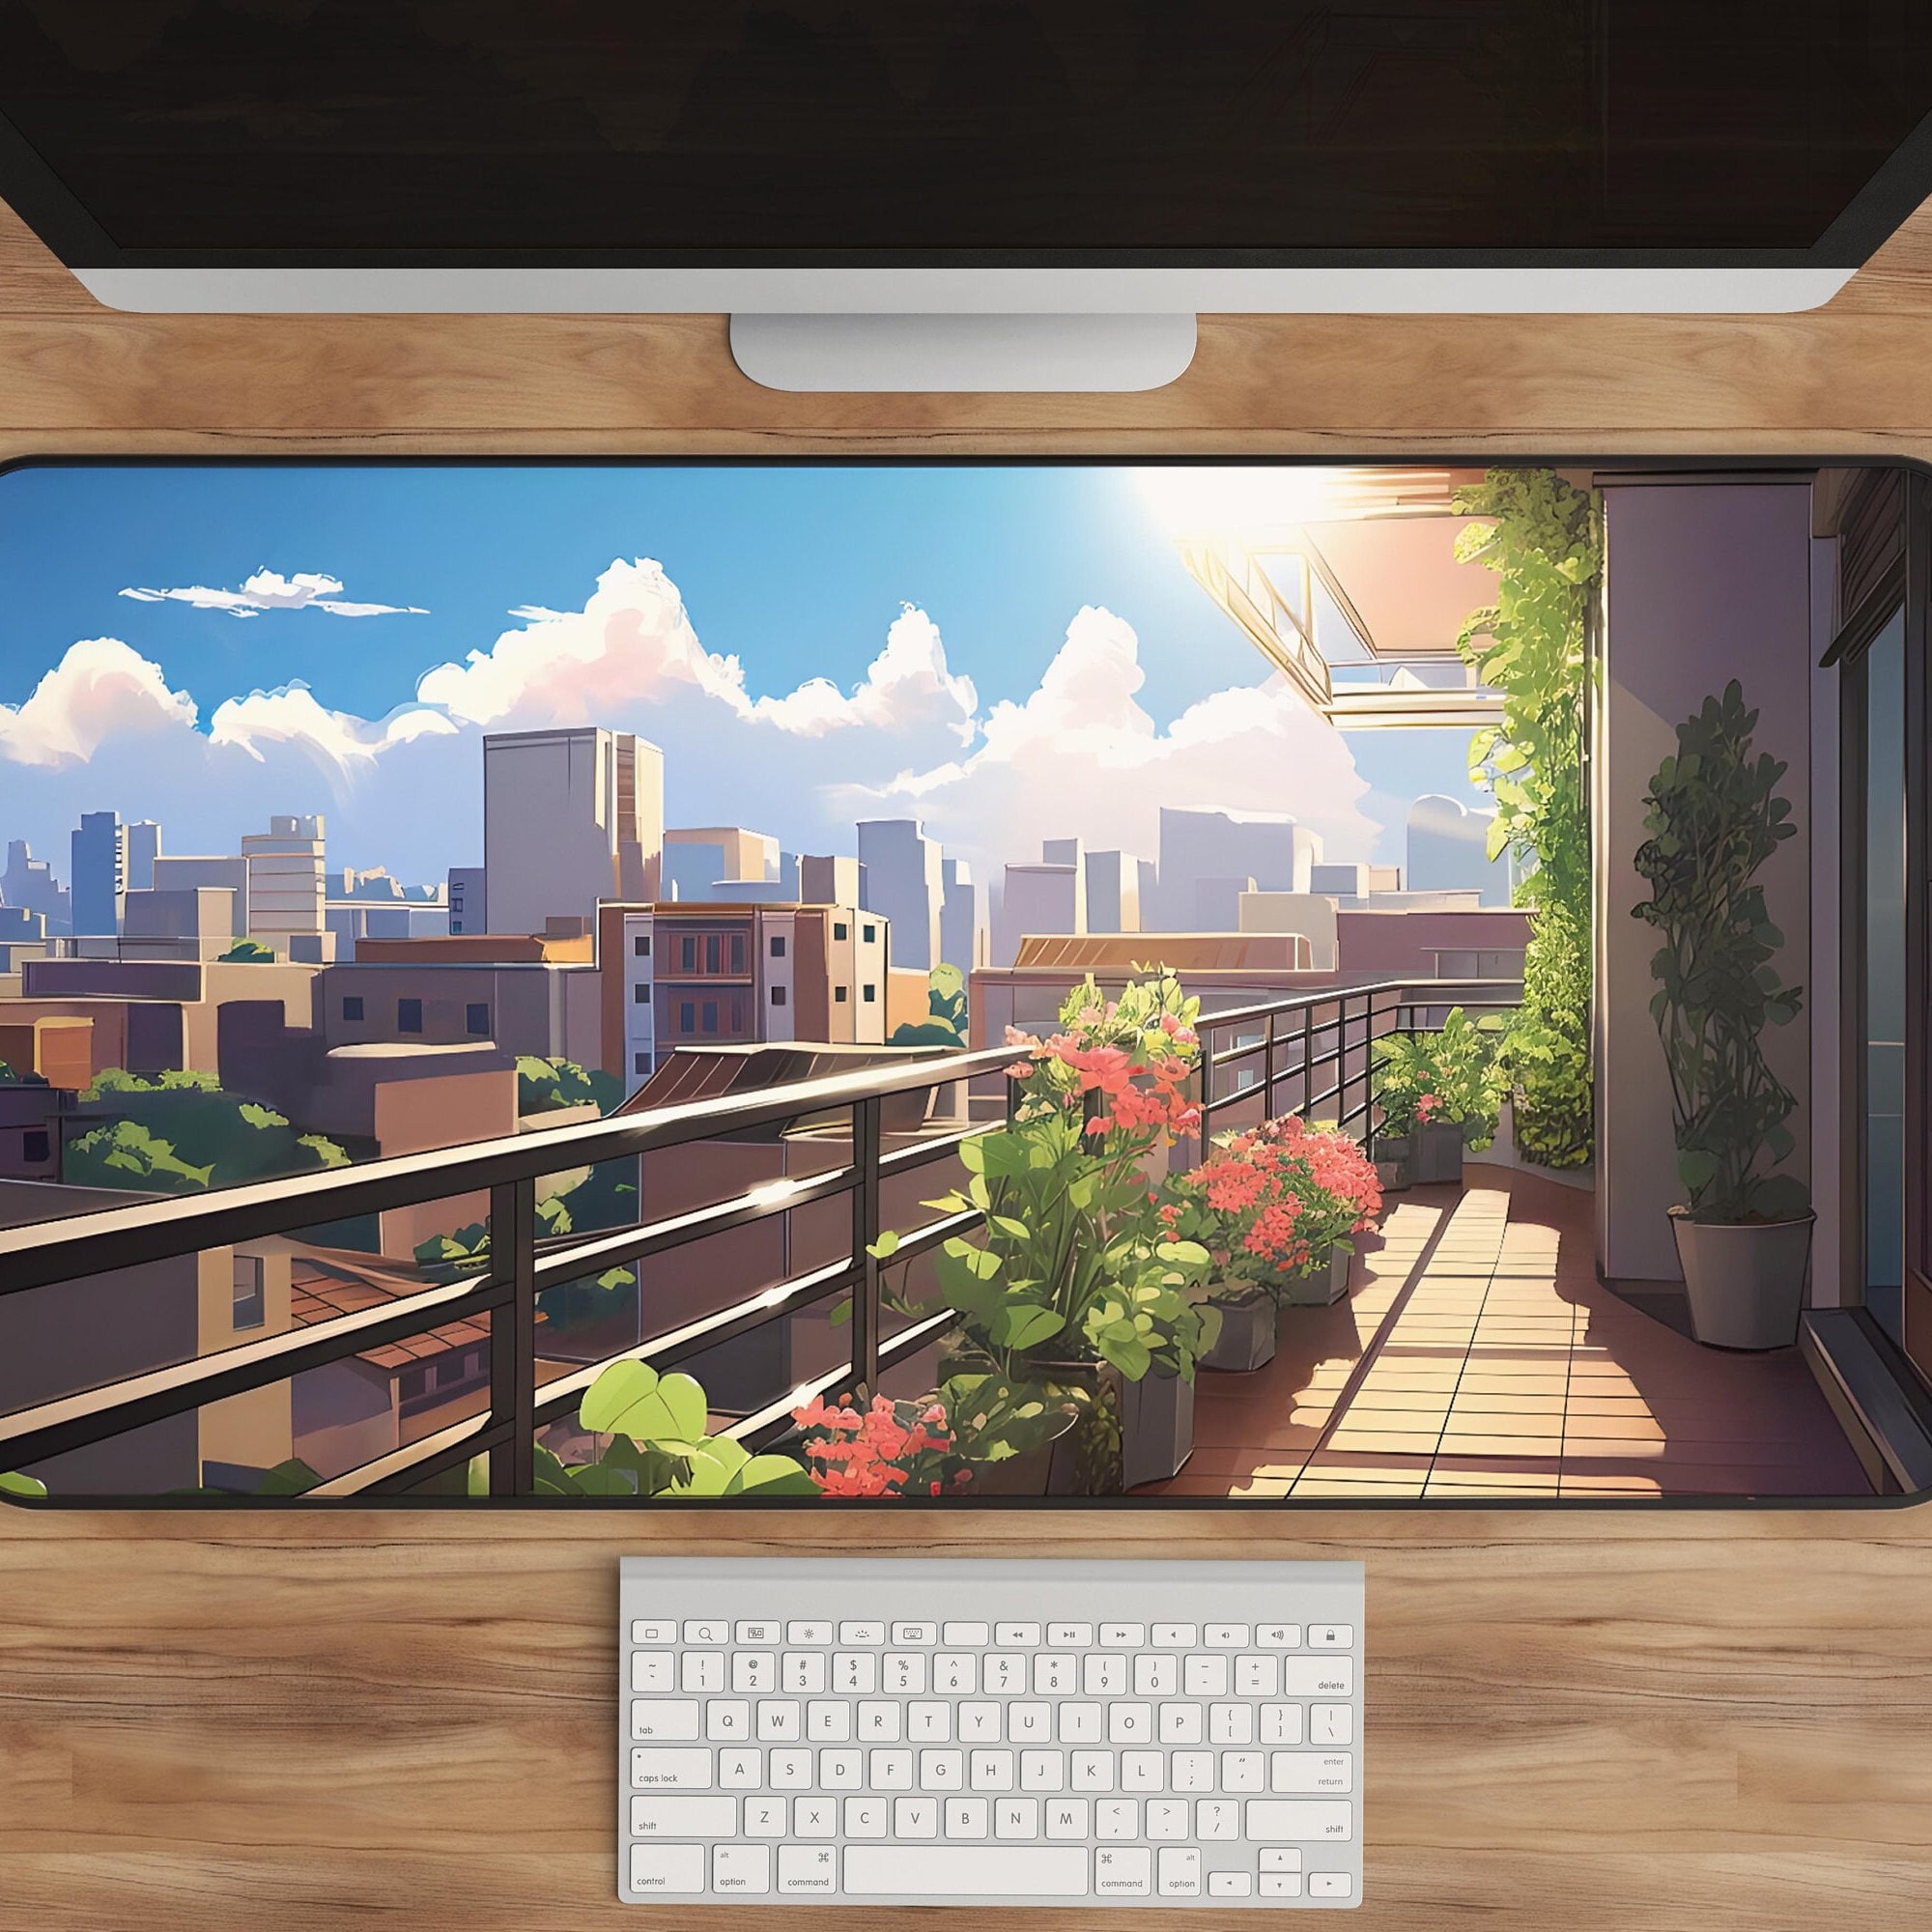 Anime Inspired Desk Decor by vivianwongart on DeviantArt